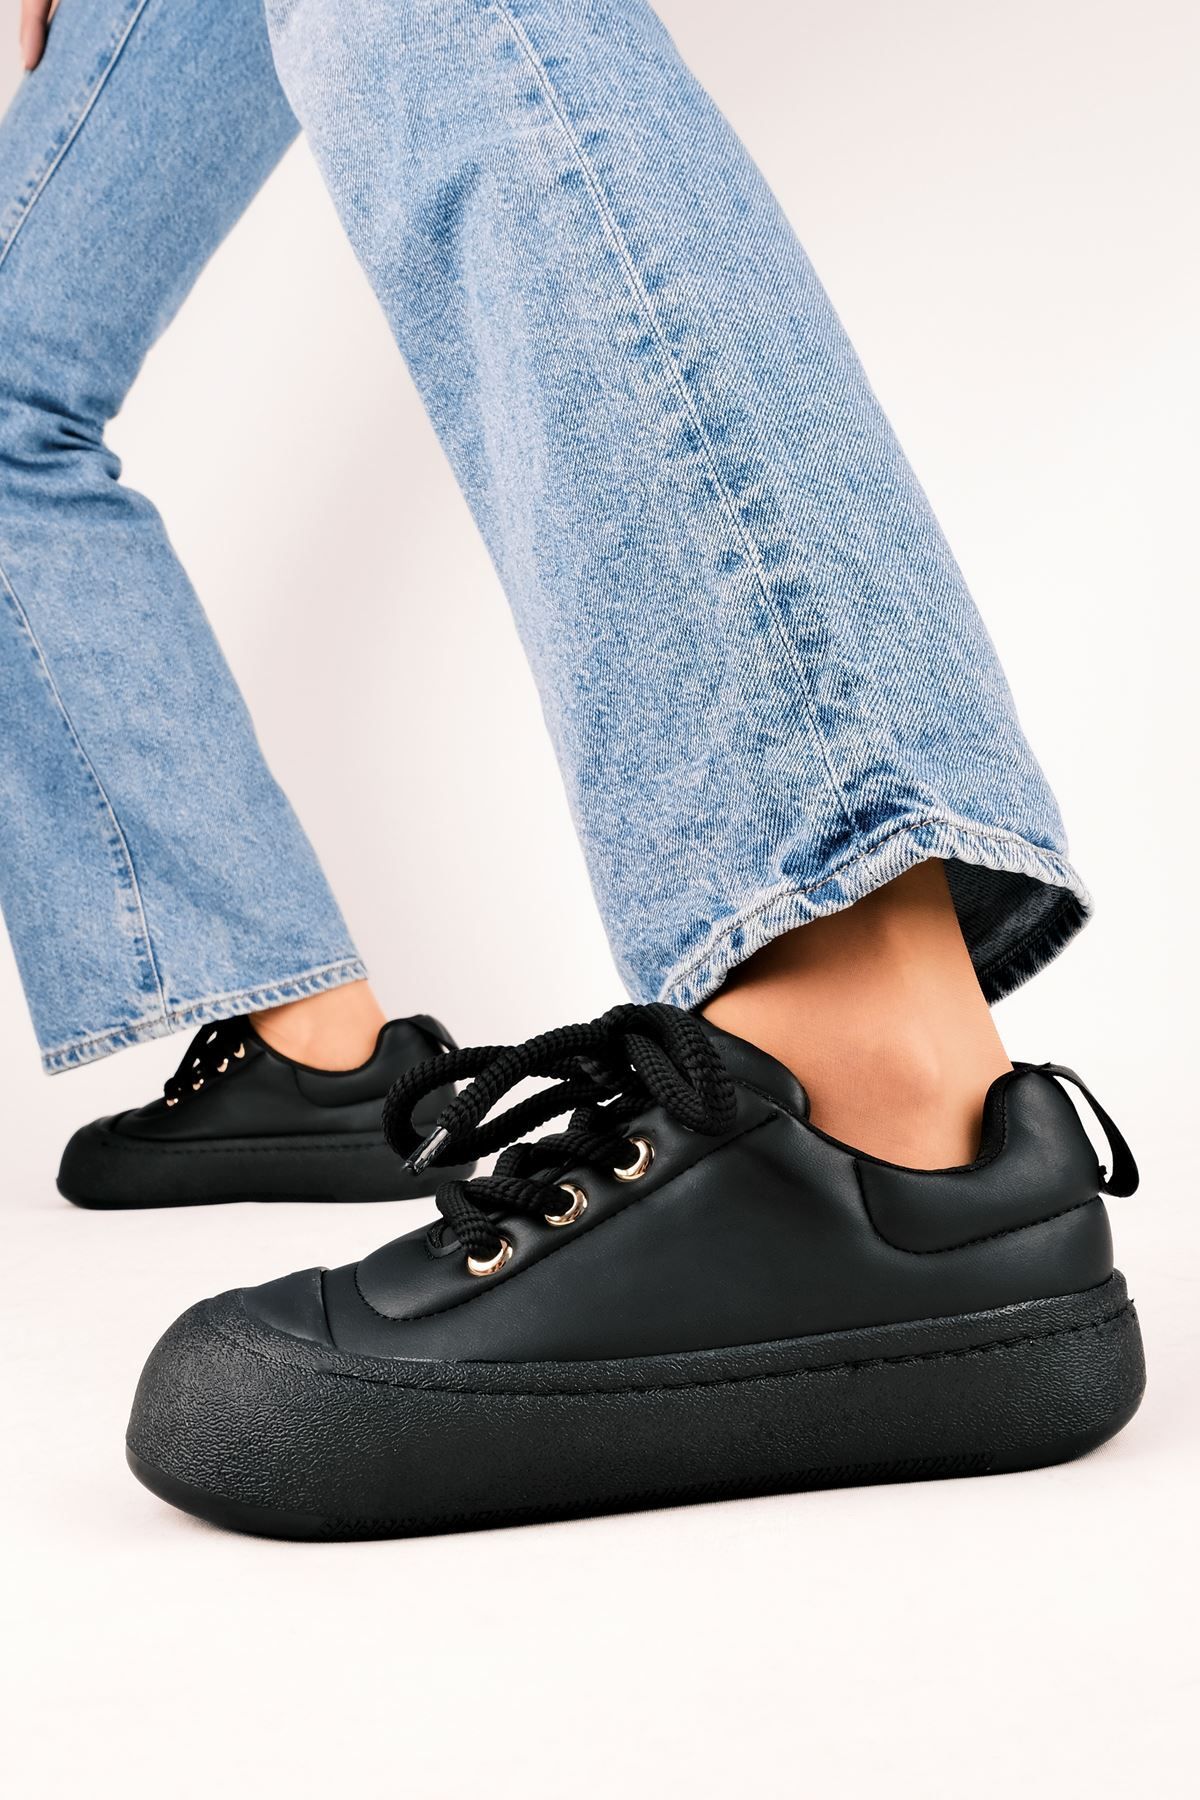 LAL SHOES & BAGS Laire Kadın Günlük Ayakkabı-siyah